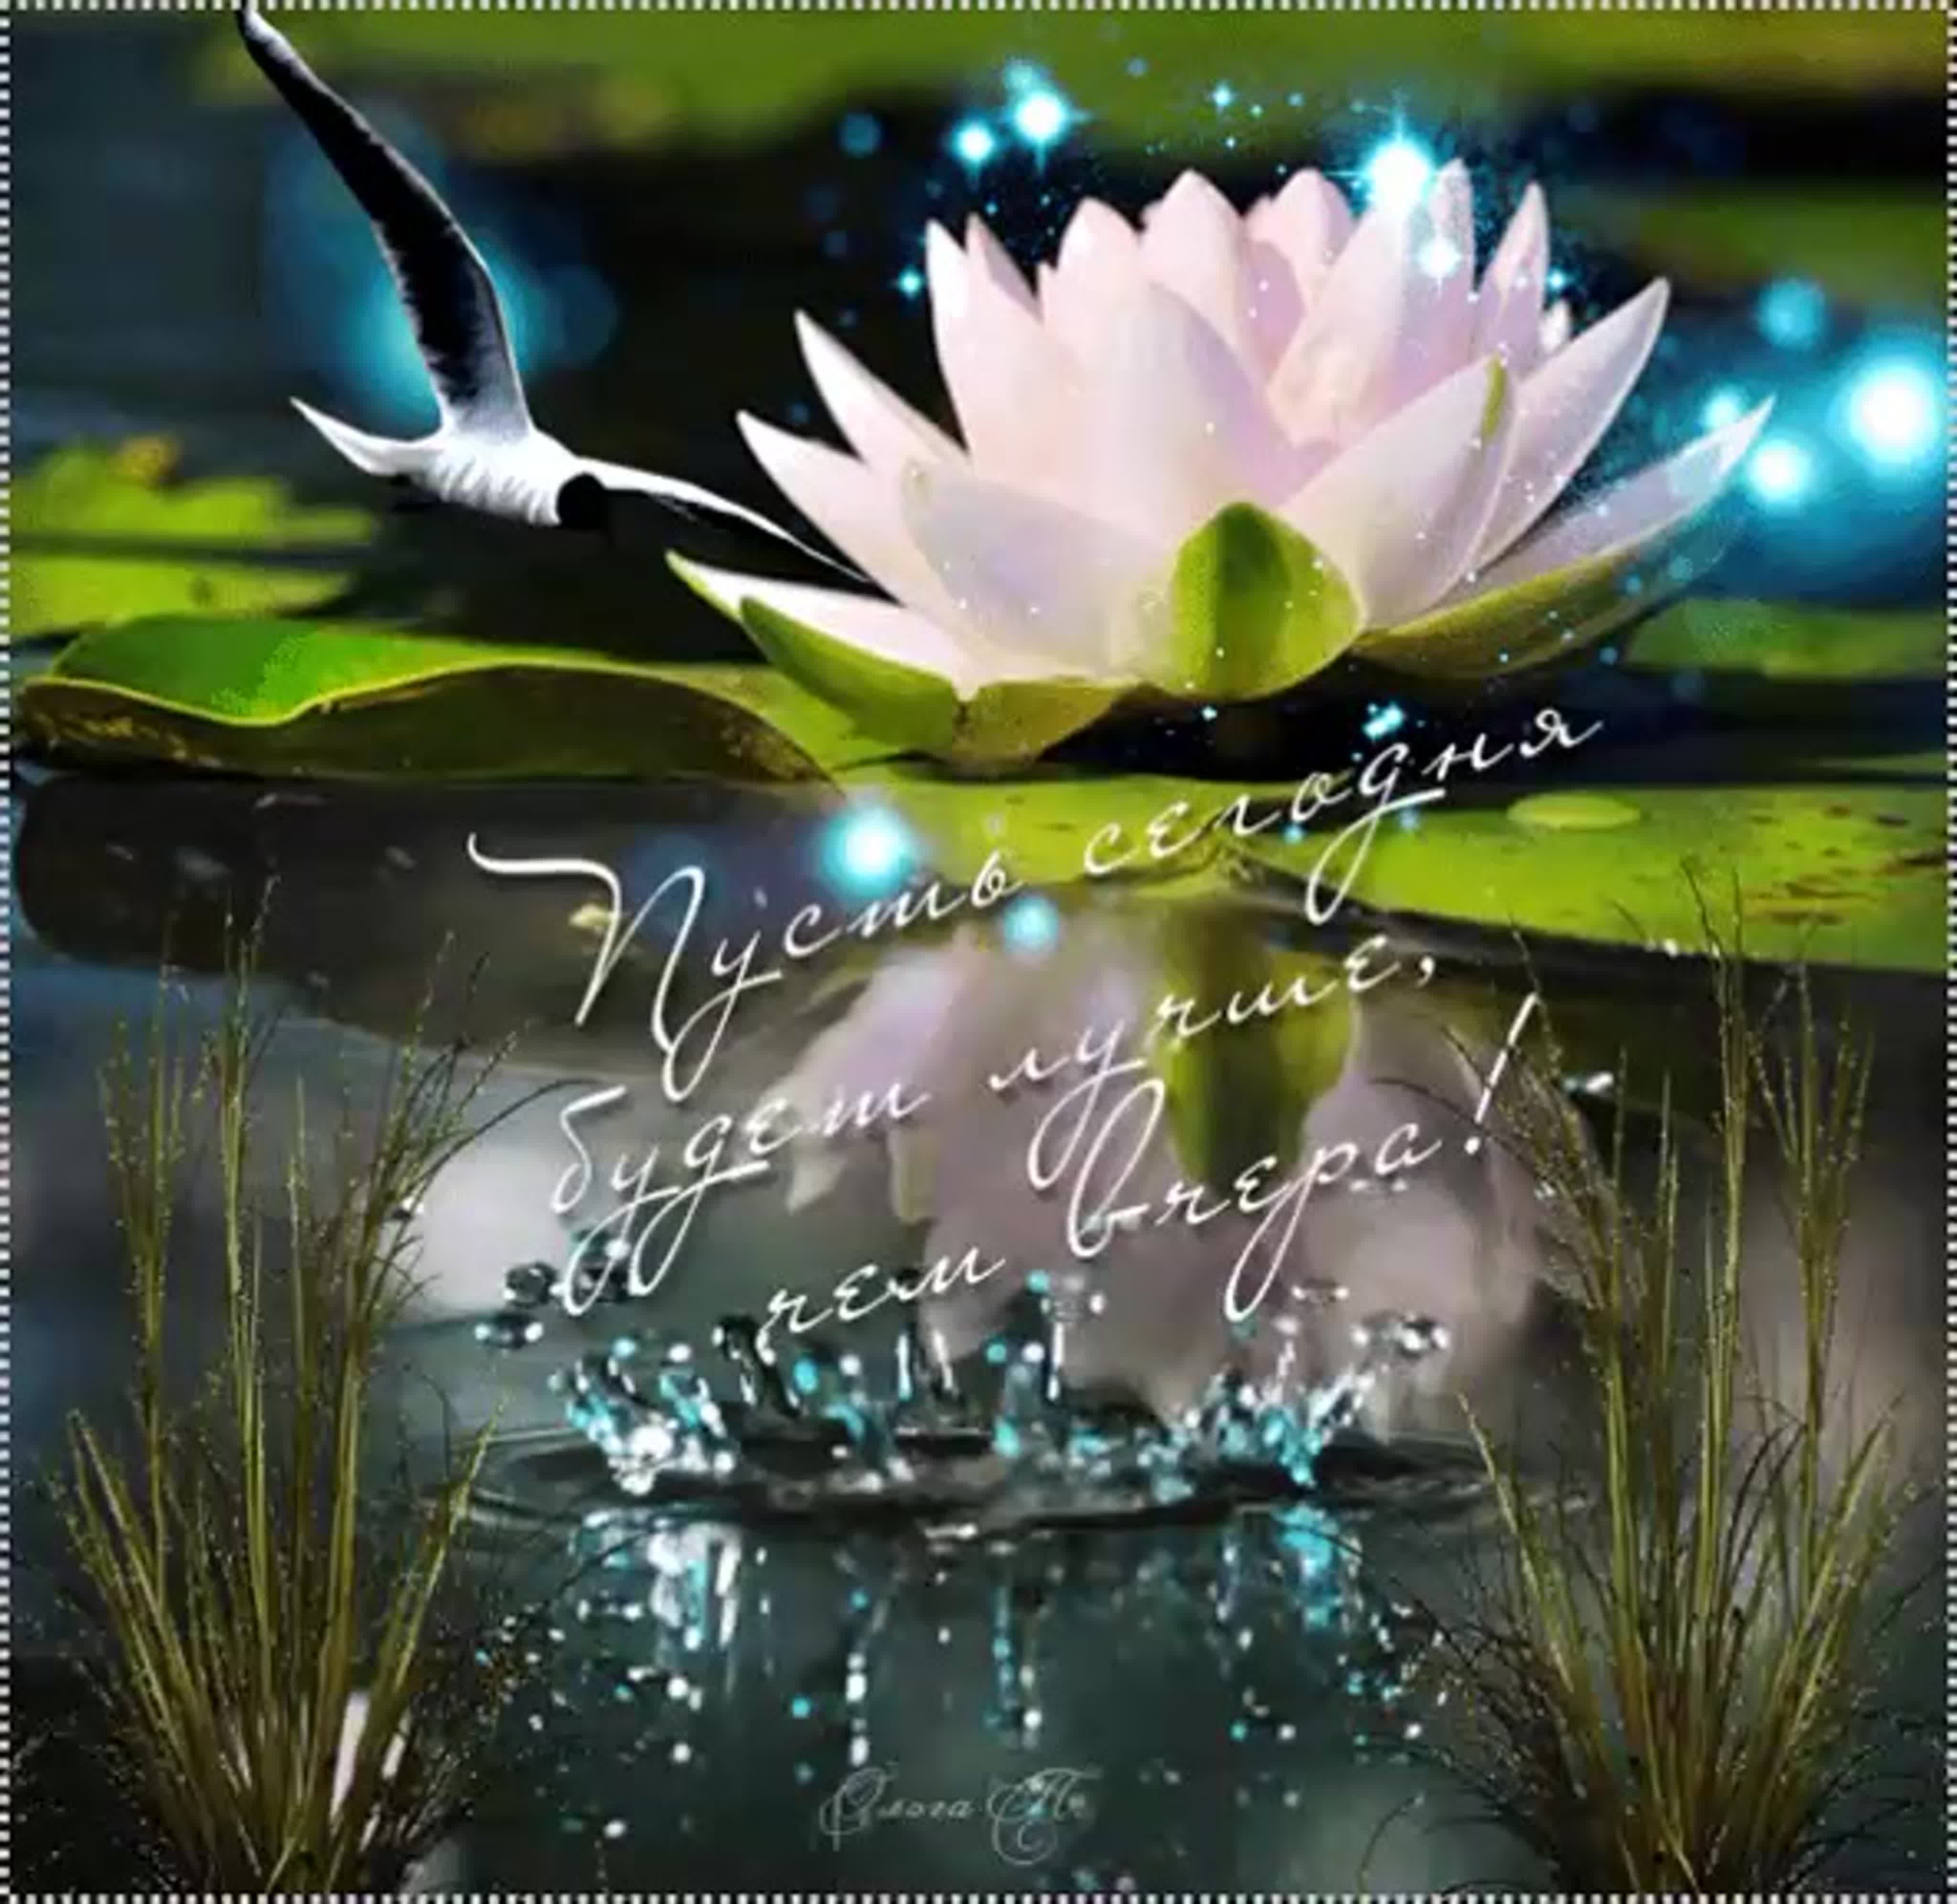 Добрый весенний вечер открытки очень красивые. Волшебного утра и чудесного дня природа. Красивые цветы на воде мерцающие. Доброго весеннего вечера.